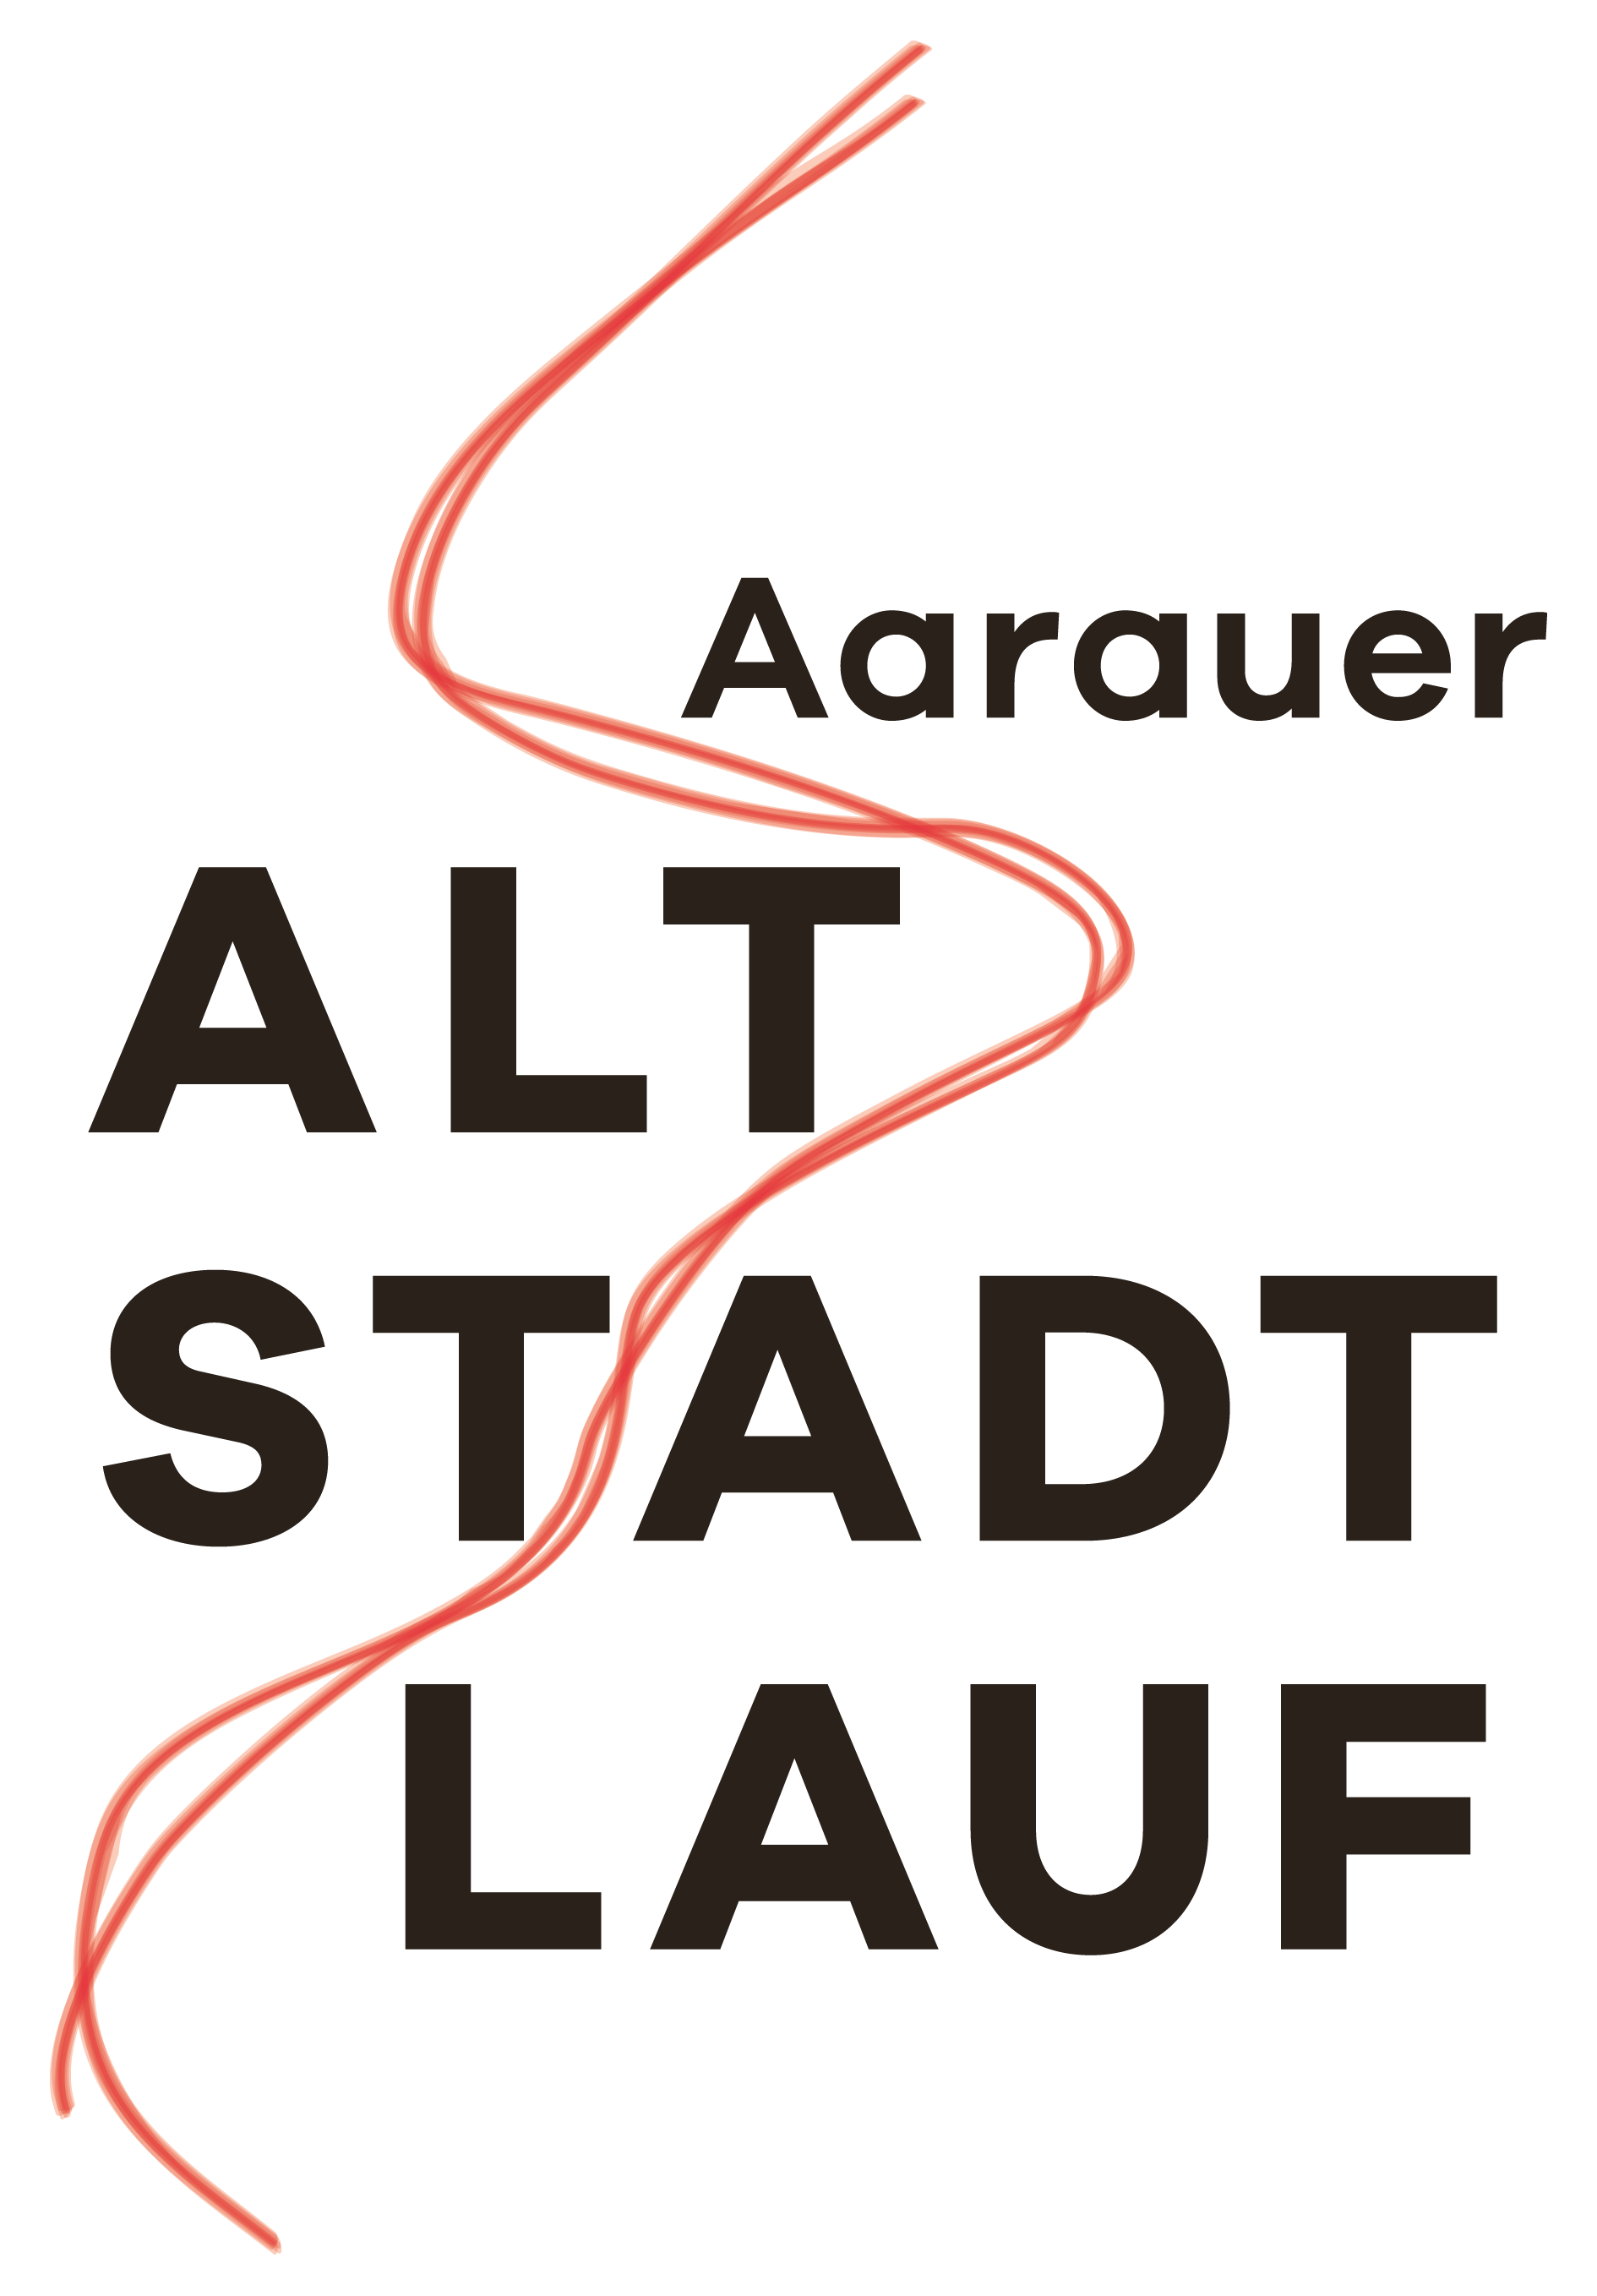 7. Aarauer Altstadtlauf